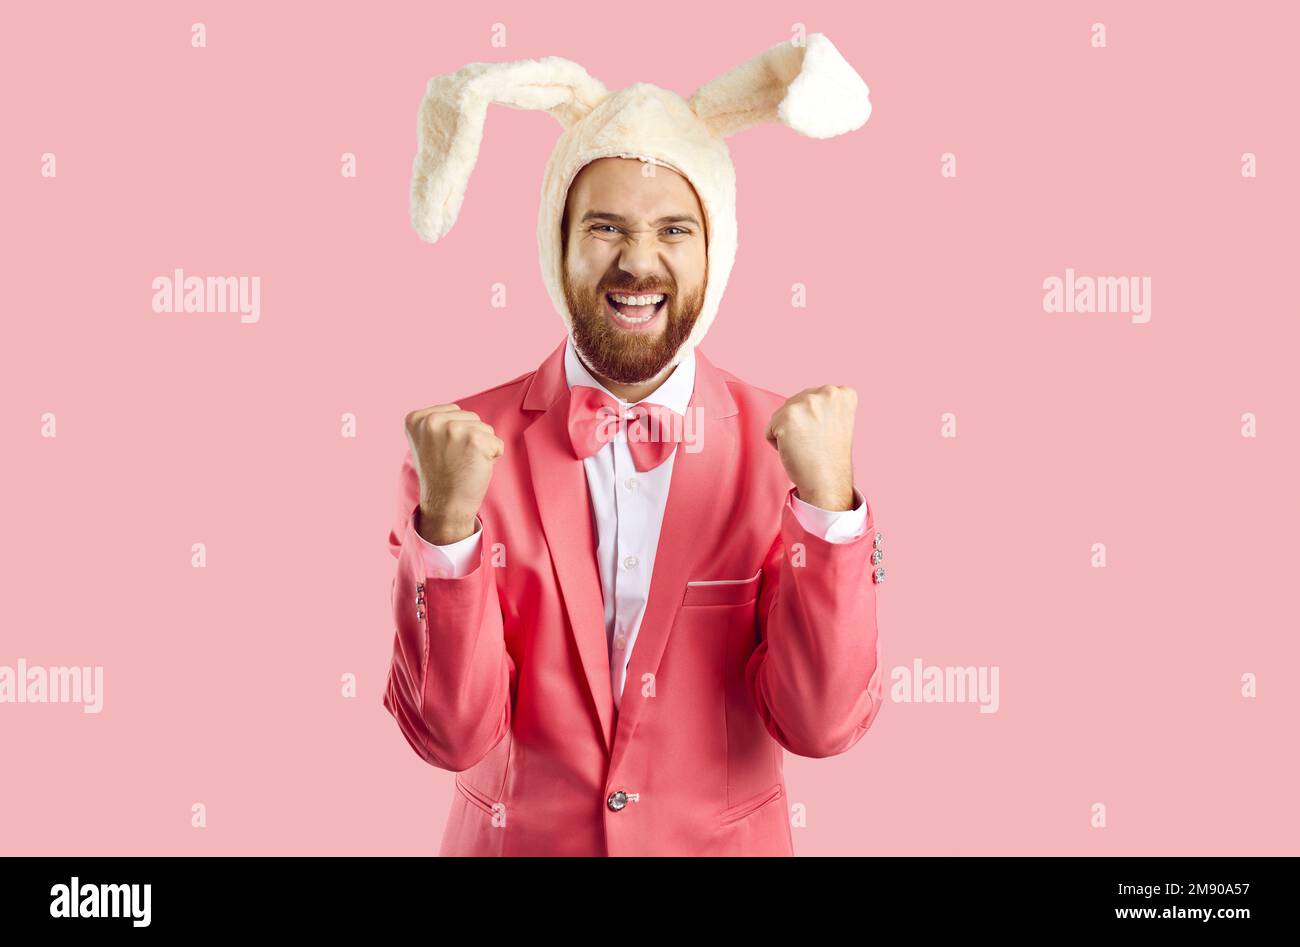 Positiv aufgeregter Mann mit Hut und Kaninchenohren freut sich über sein Glück, isoliert auf pinkfarbenem Hintergrund. Stockfoto